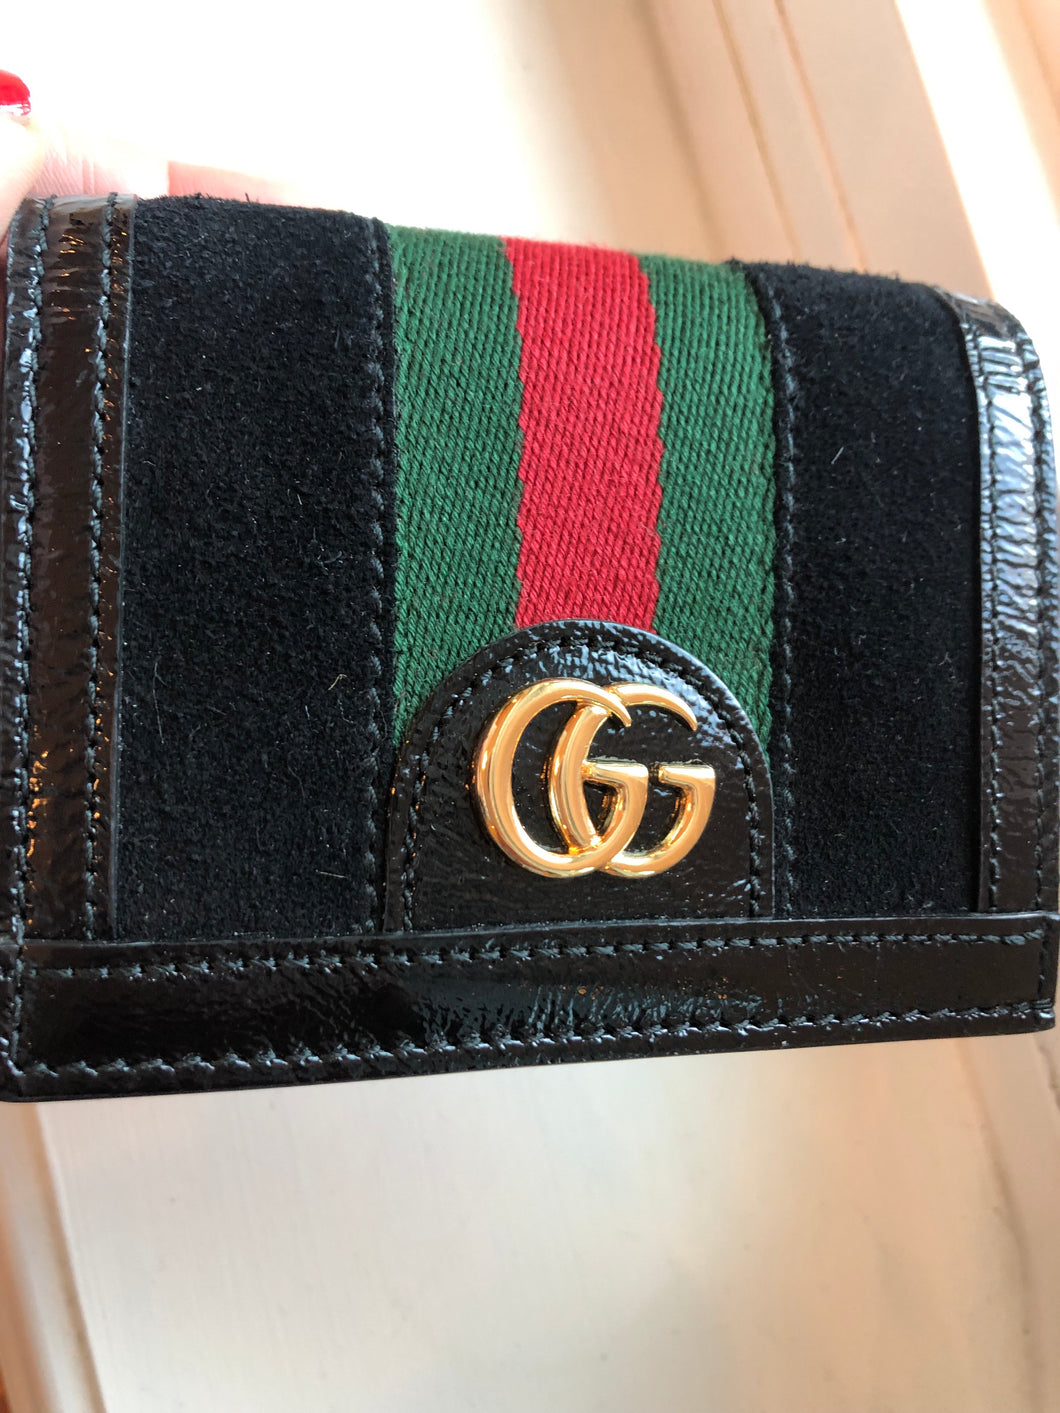 Gucci Web Stripe Card Case in Black Suede